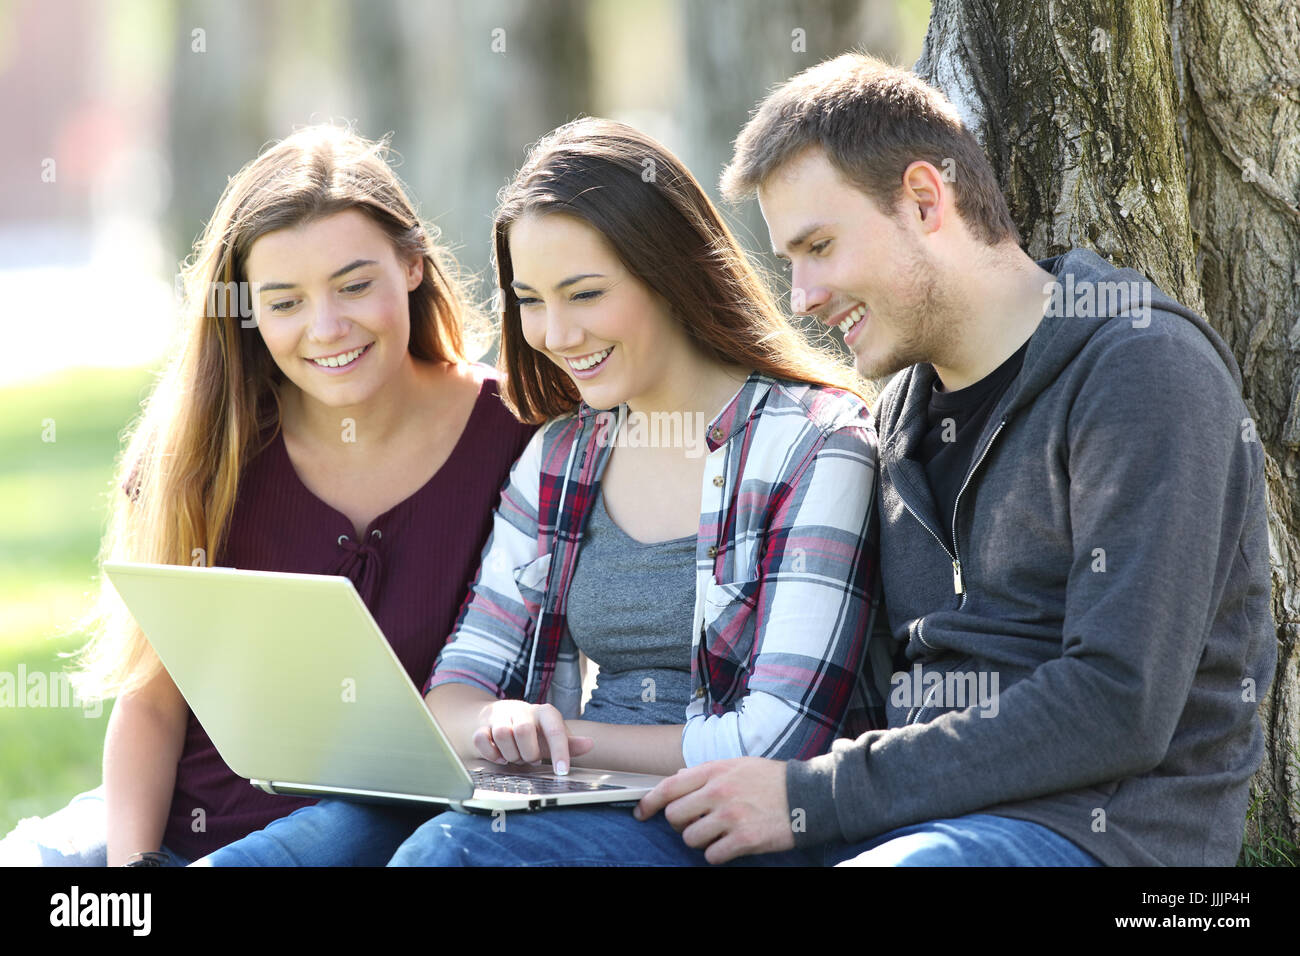 Trois adolescents en quête de contenu média heureux ensemble en ligne avec un ordinateur portable assis sur l'herbe dans un parc Banque D'Images